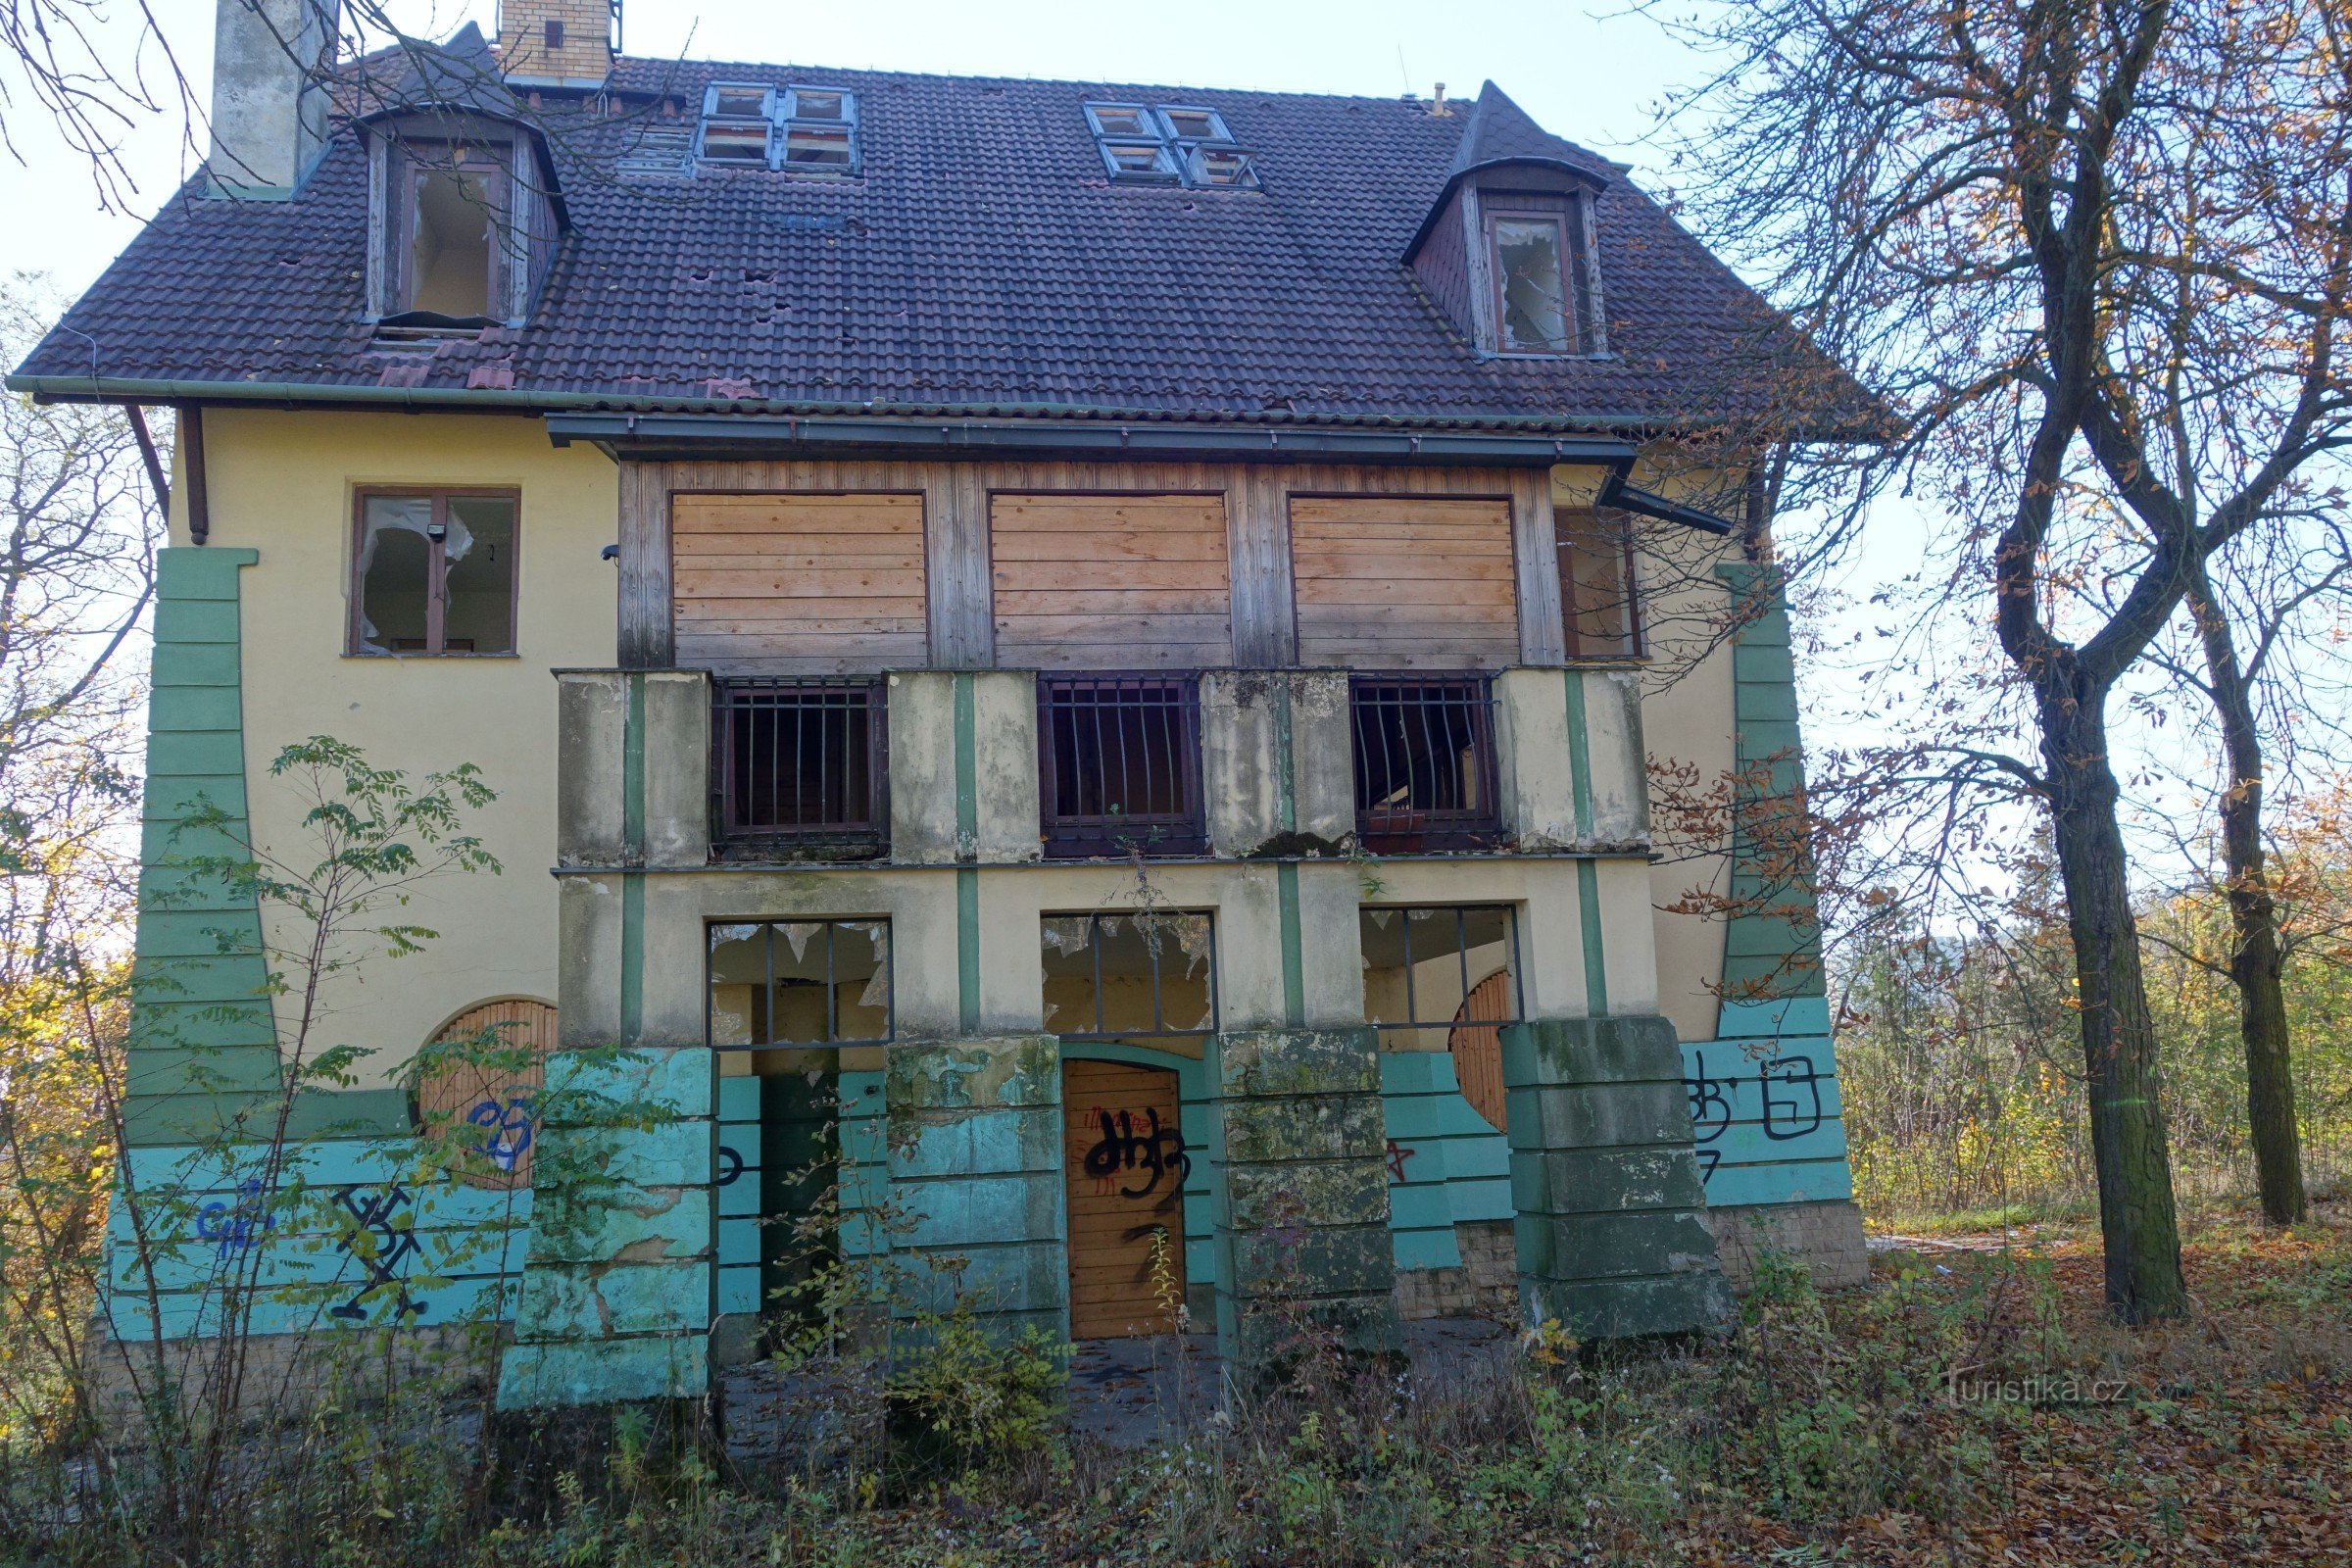 Hošn's villa